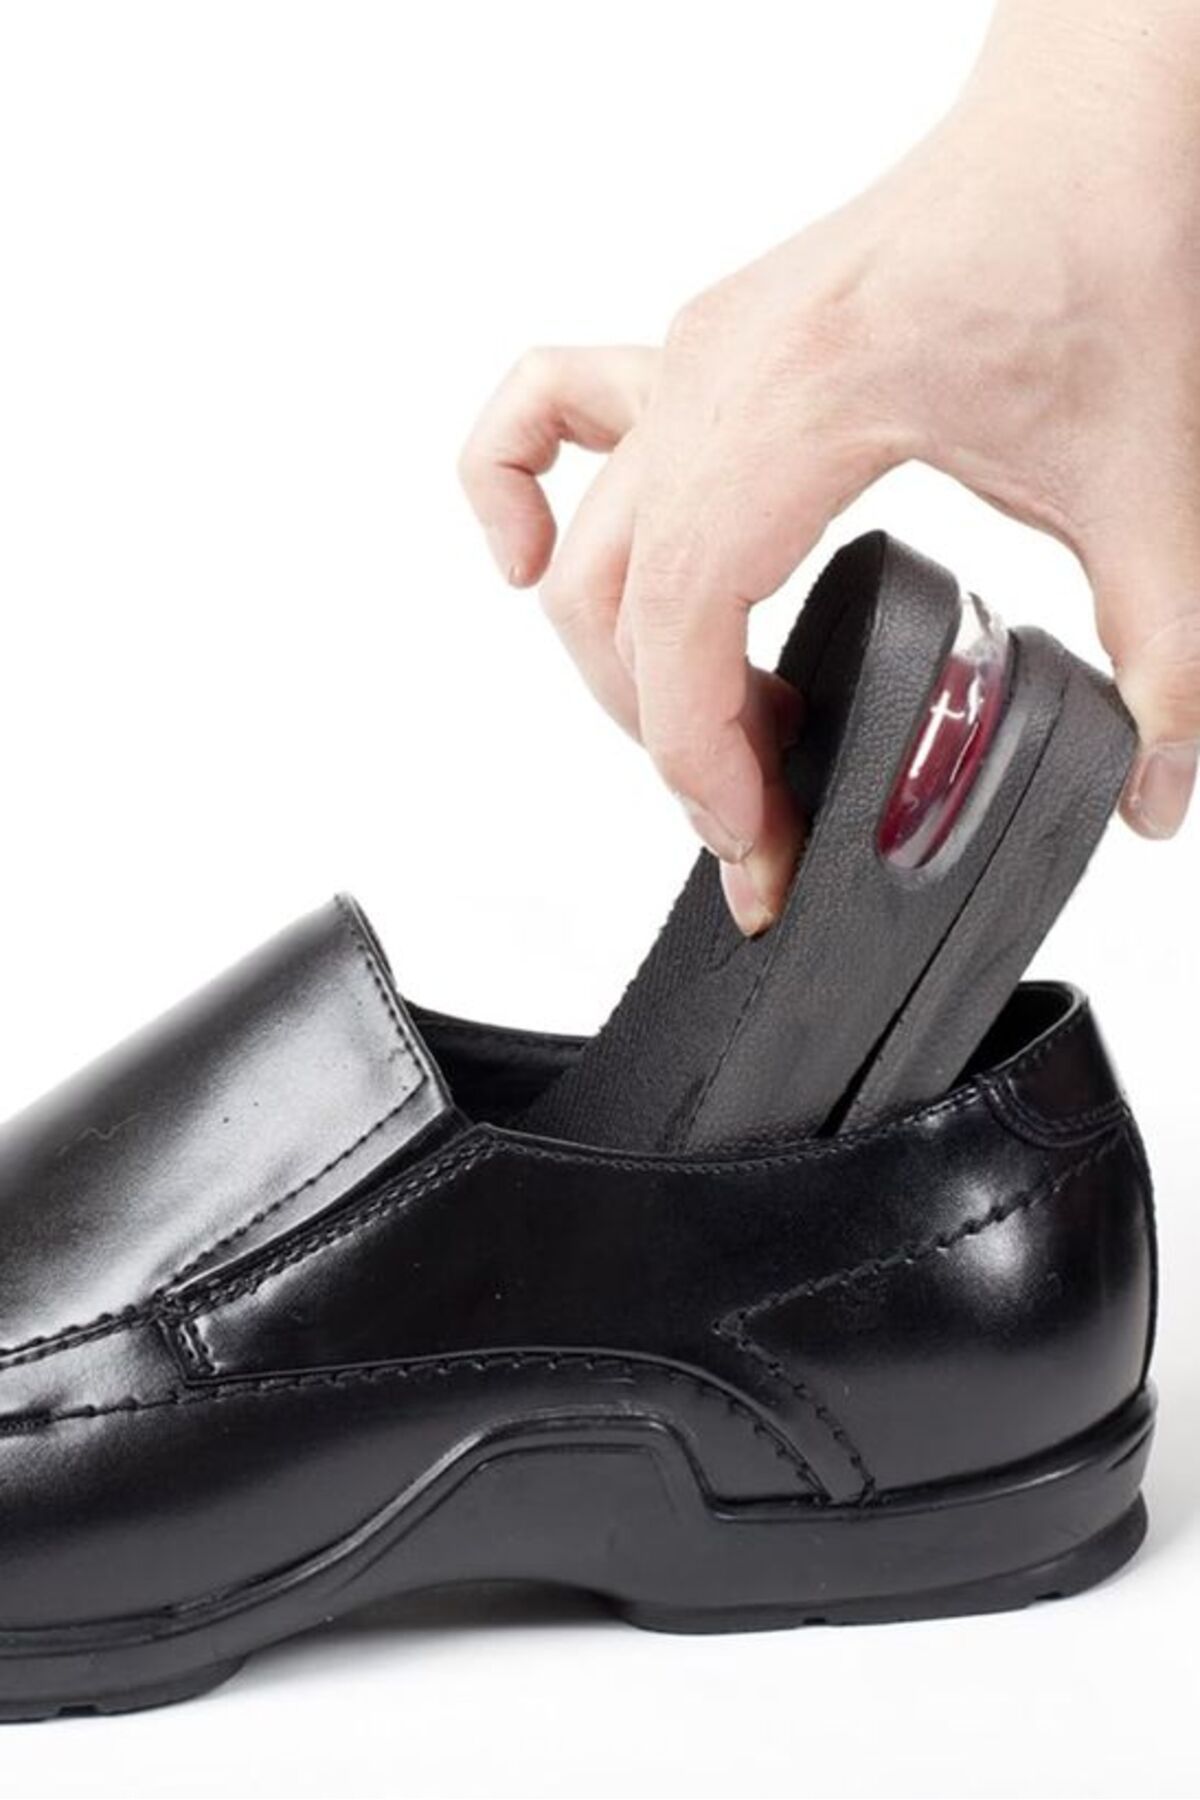 COZY SENSE 5 Cm Boy Uzatıcı Ortapedik Ayakkabı Tabanı Gizli Topuk Yükseltici Silikon Tabanlık Vurma Önleyici